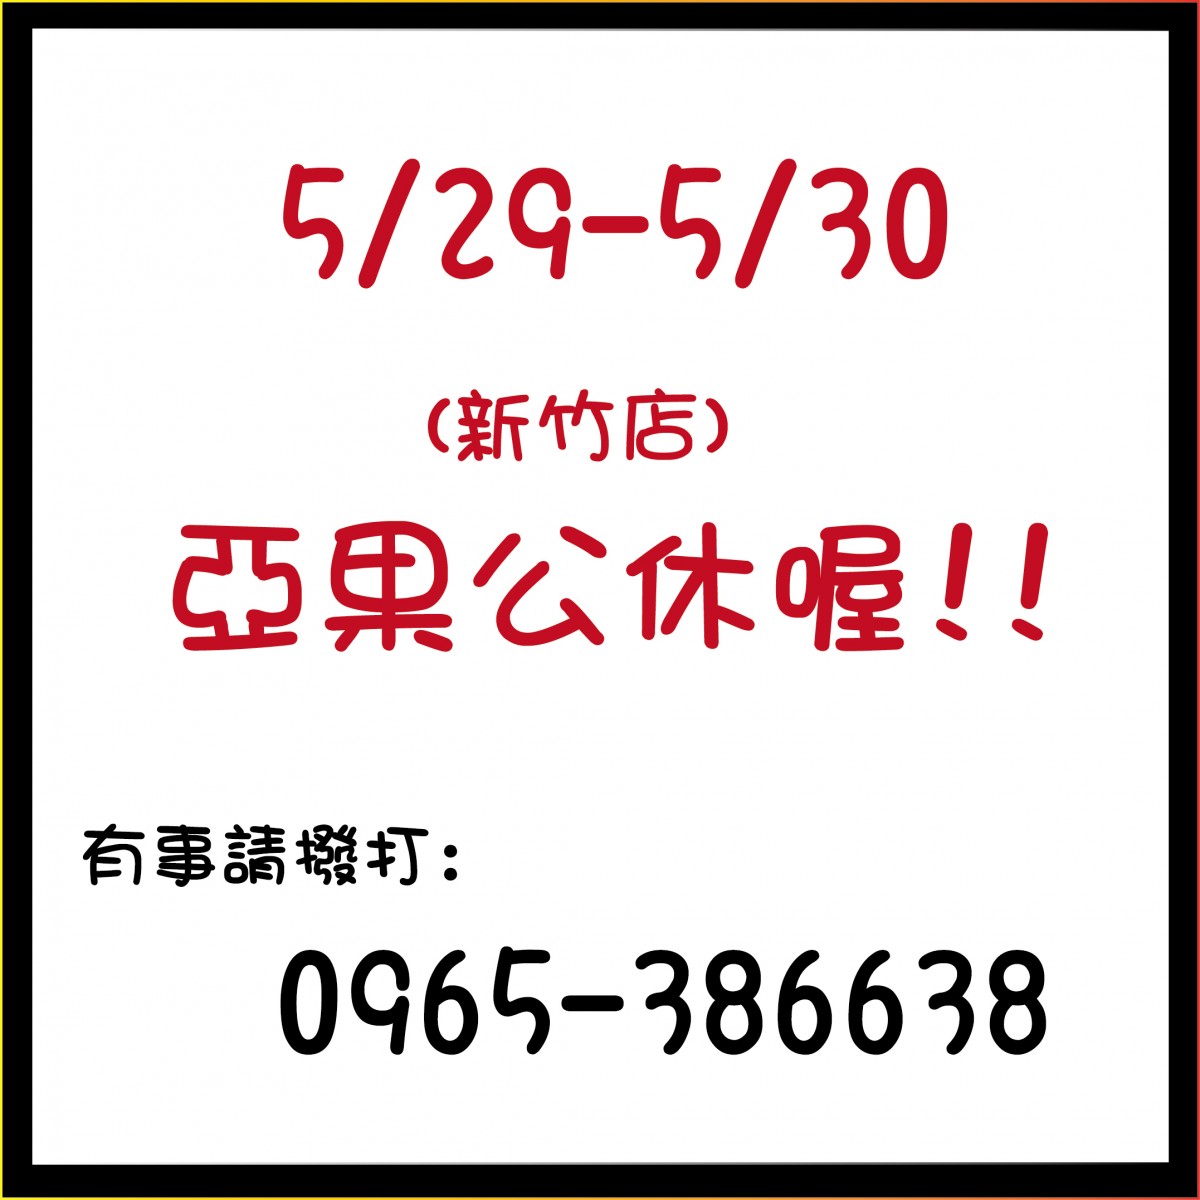 5/29-5/30新竹店公休喔!